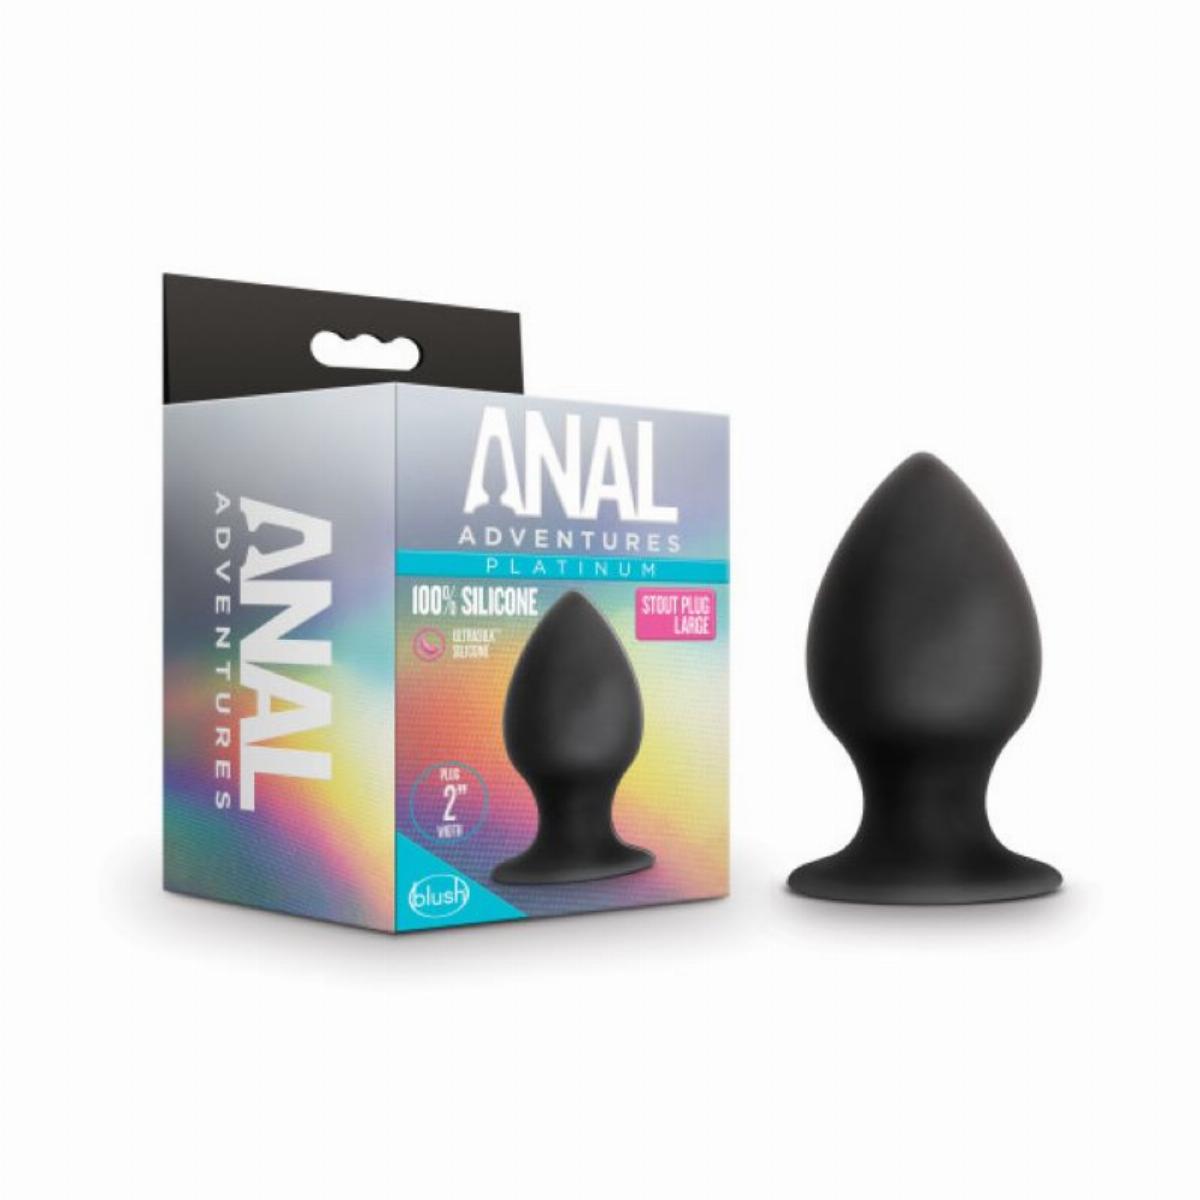 Zwarte stout butt plug met spitse punt, gemaakt van siliconen, breng je makkelijk in. De butt plug heeft het formaat large en is van Anal Adventures. Deze butt plug is te koop bij Flavourez.